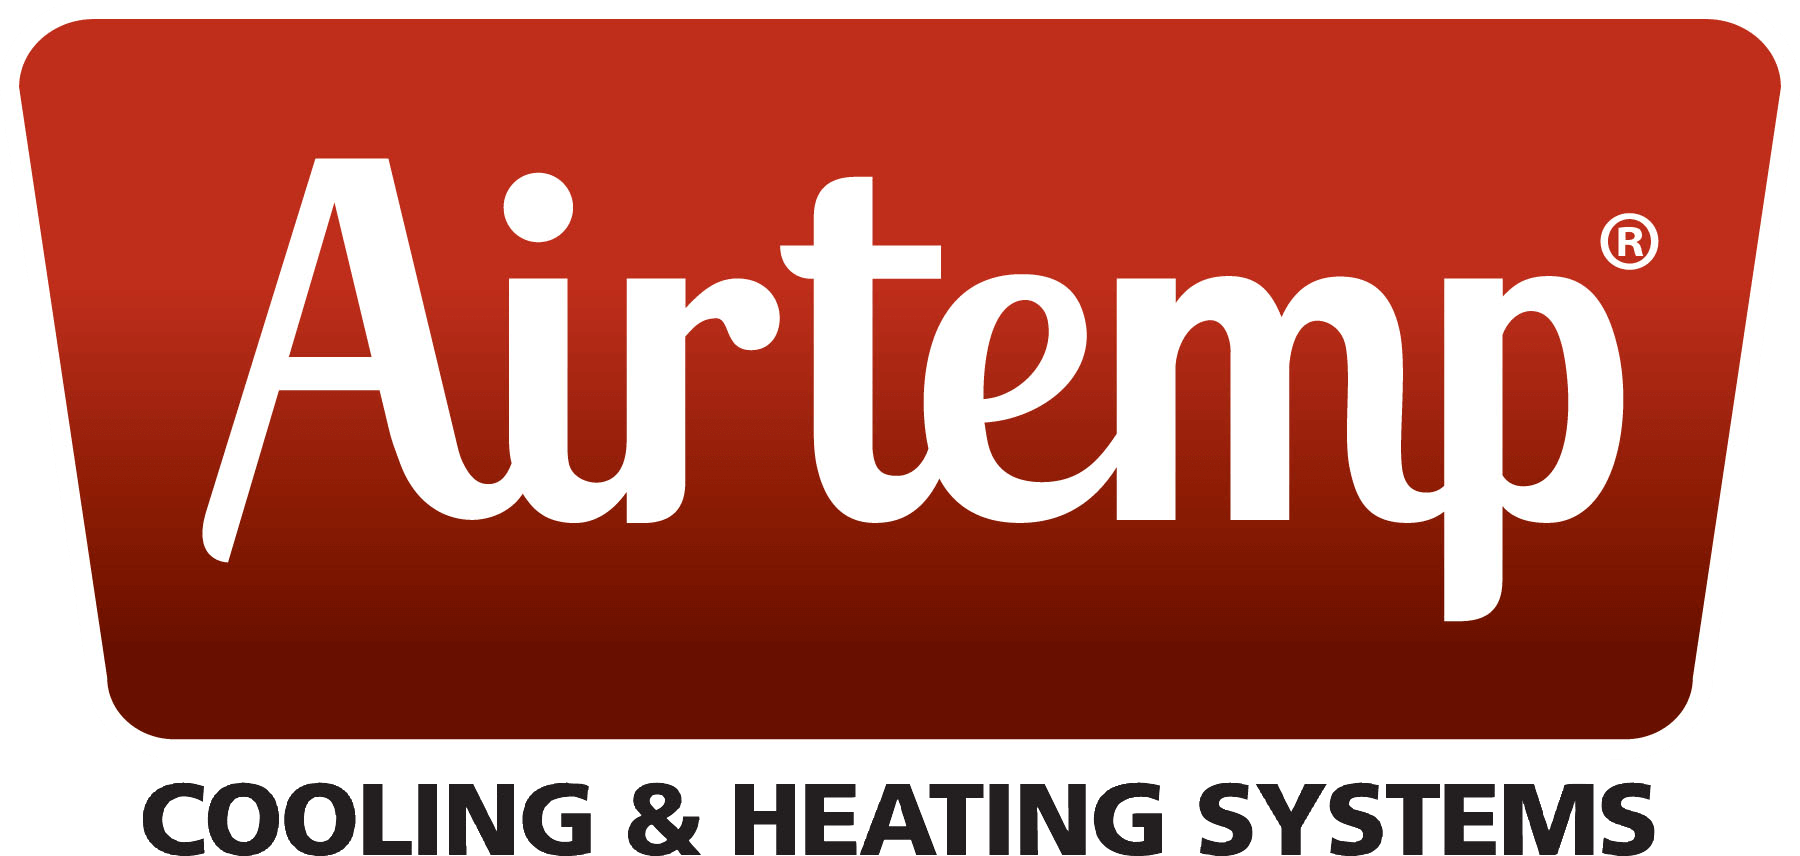 Airtemp logo